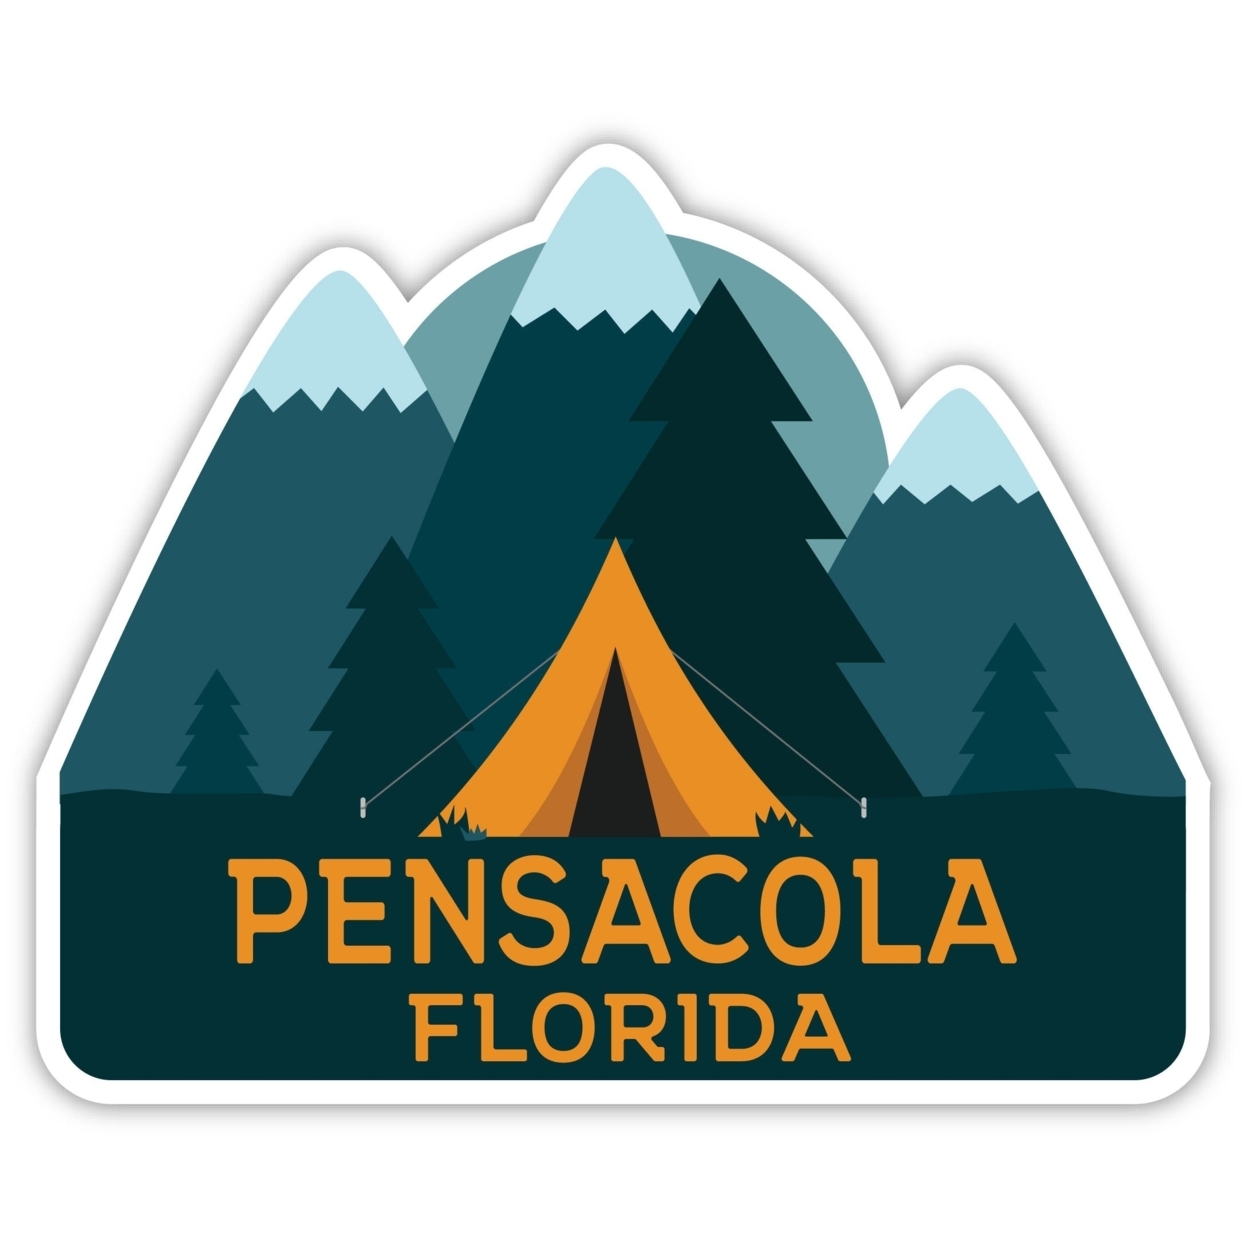 Pensacola Florida Souvenir Decorative Stickers (Choose Theme And Size) - Single Unit, 4-Inch, Tent